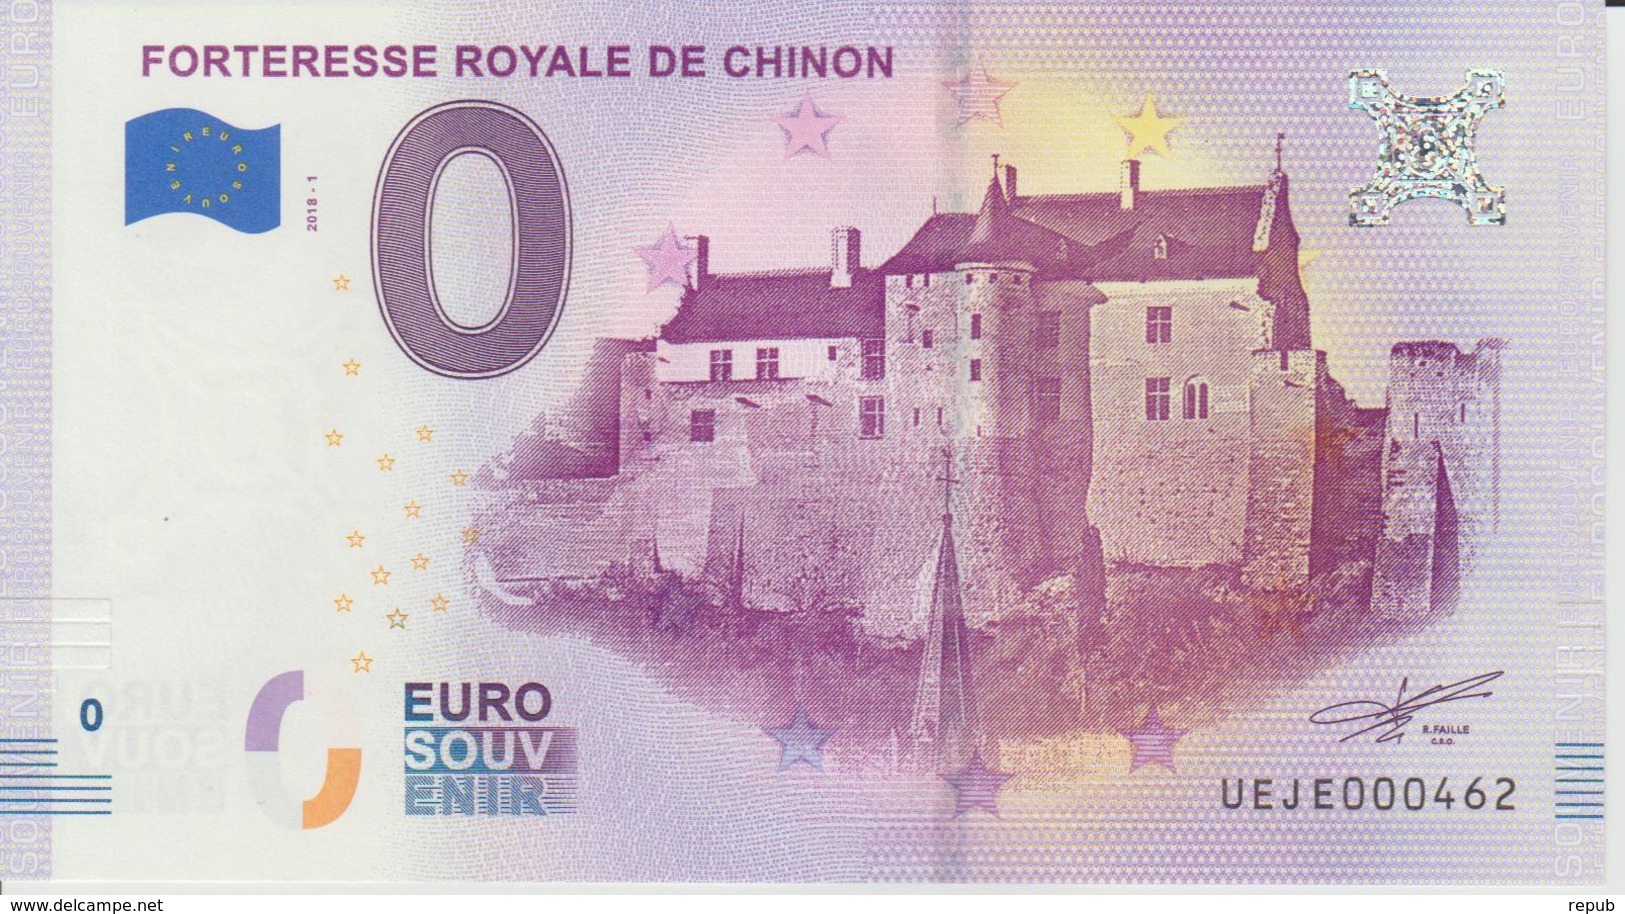 Billet Touristique 0 Euro Souvenir France 37 Forteresse Royale De Chinon  2018-1 N°UEJE000462 - Private Proofs / Unofficial